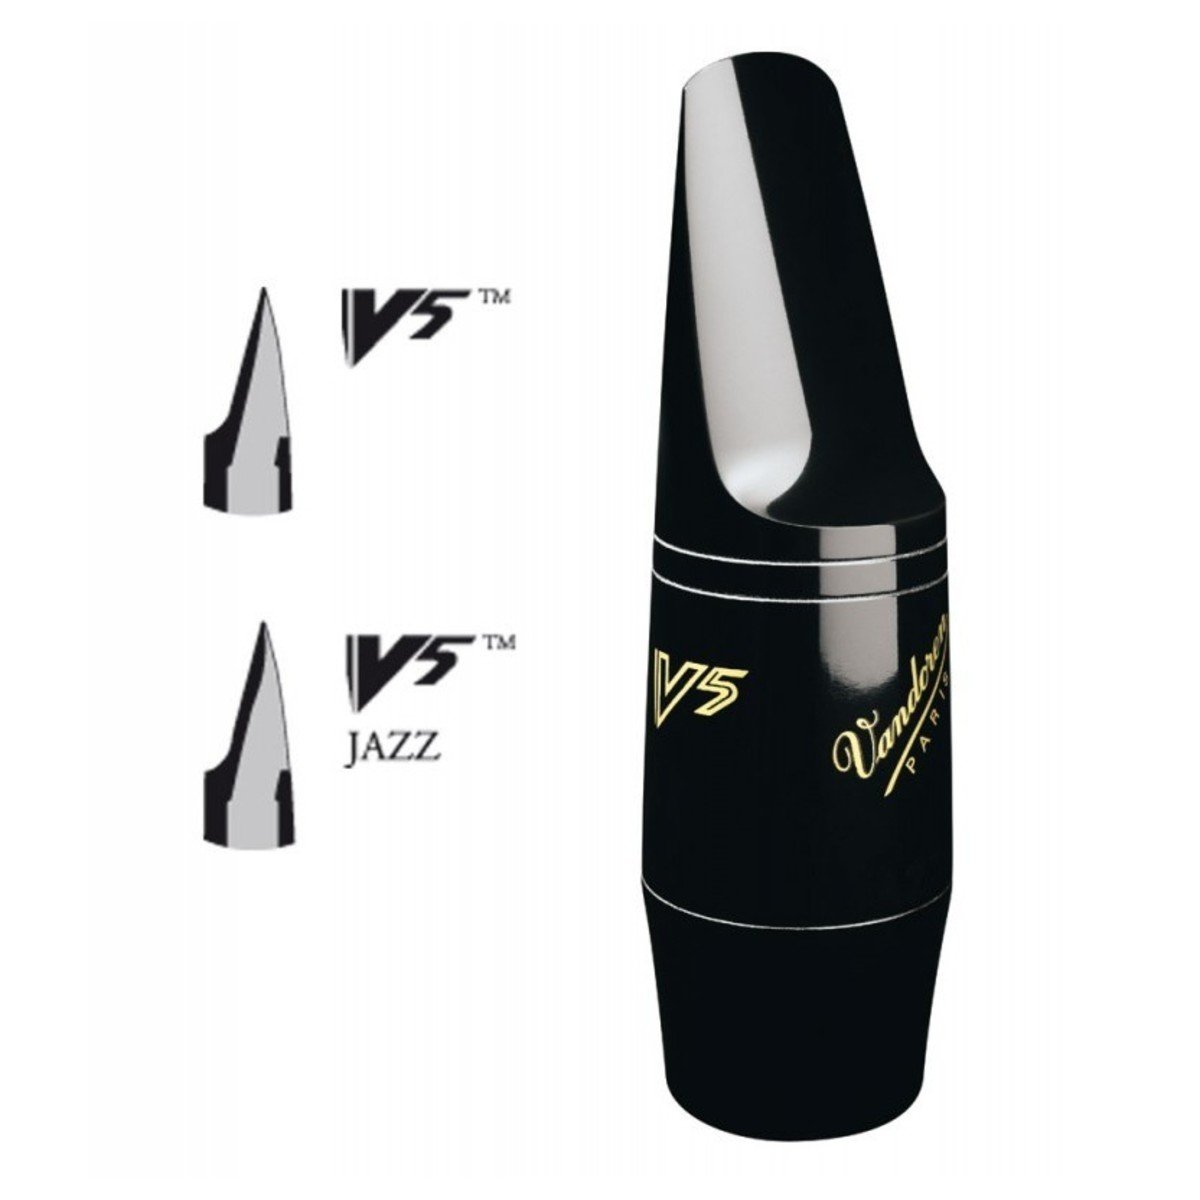 Vandoren hubička A20/V5 pro alt saxofon